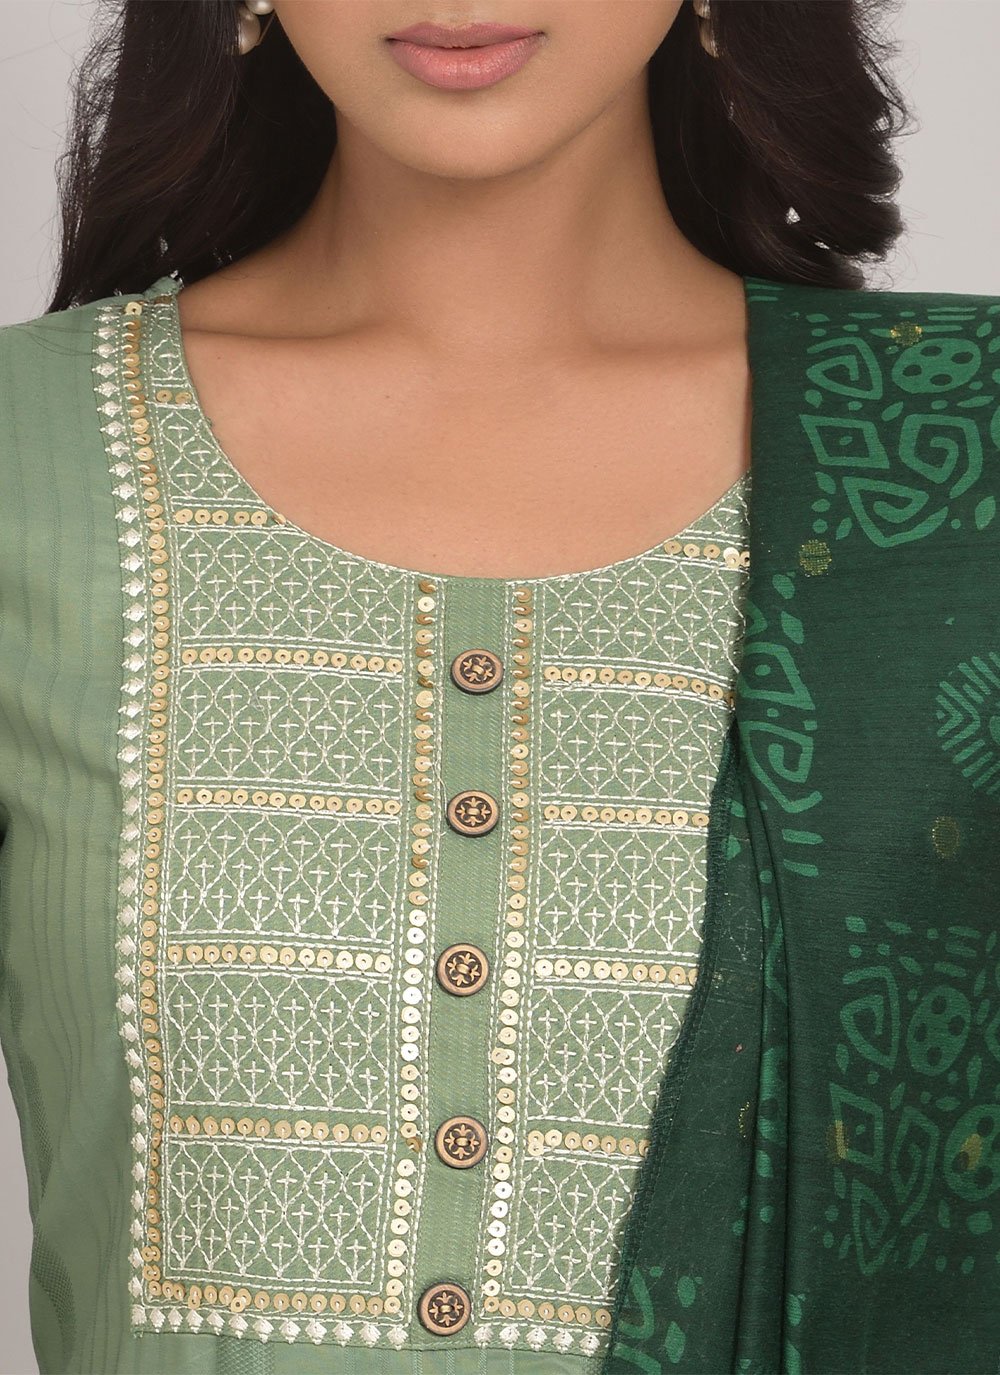 Designer Salwar Suit Rayon Viscose Green Embroidered Salwar Kameez